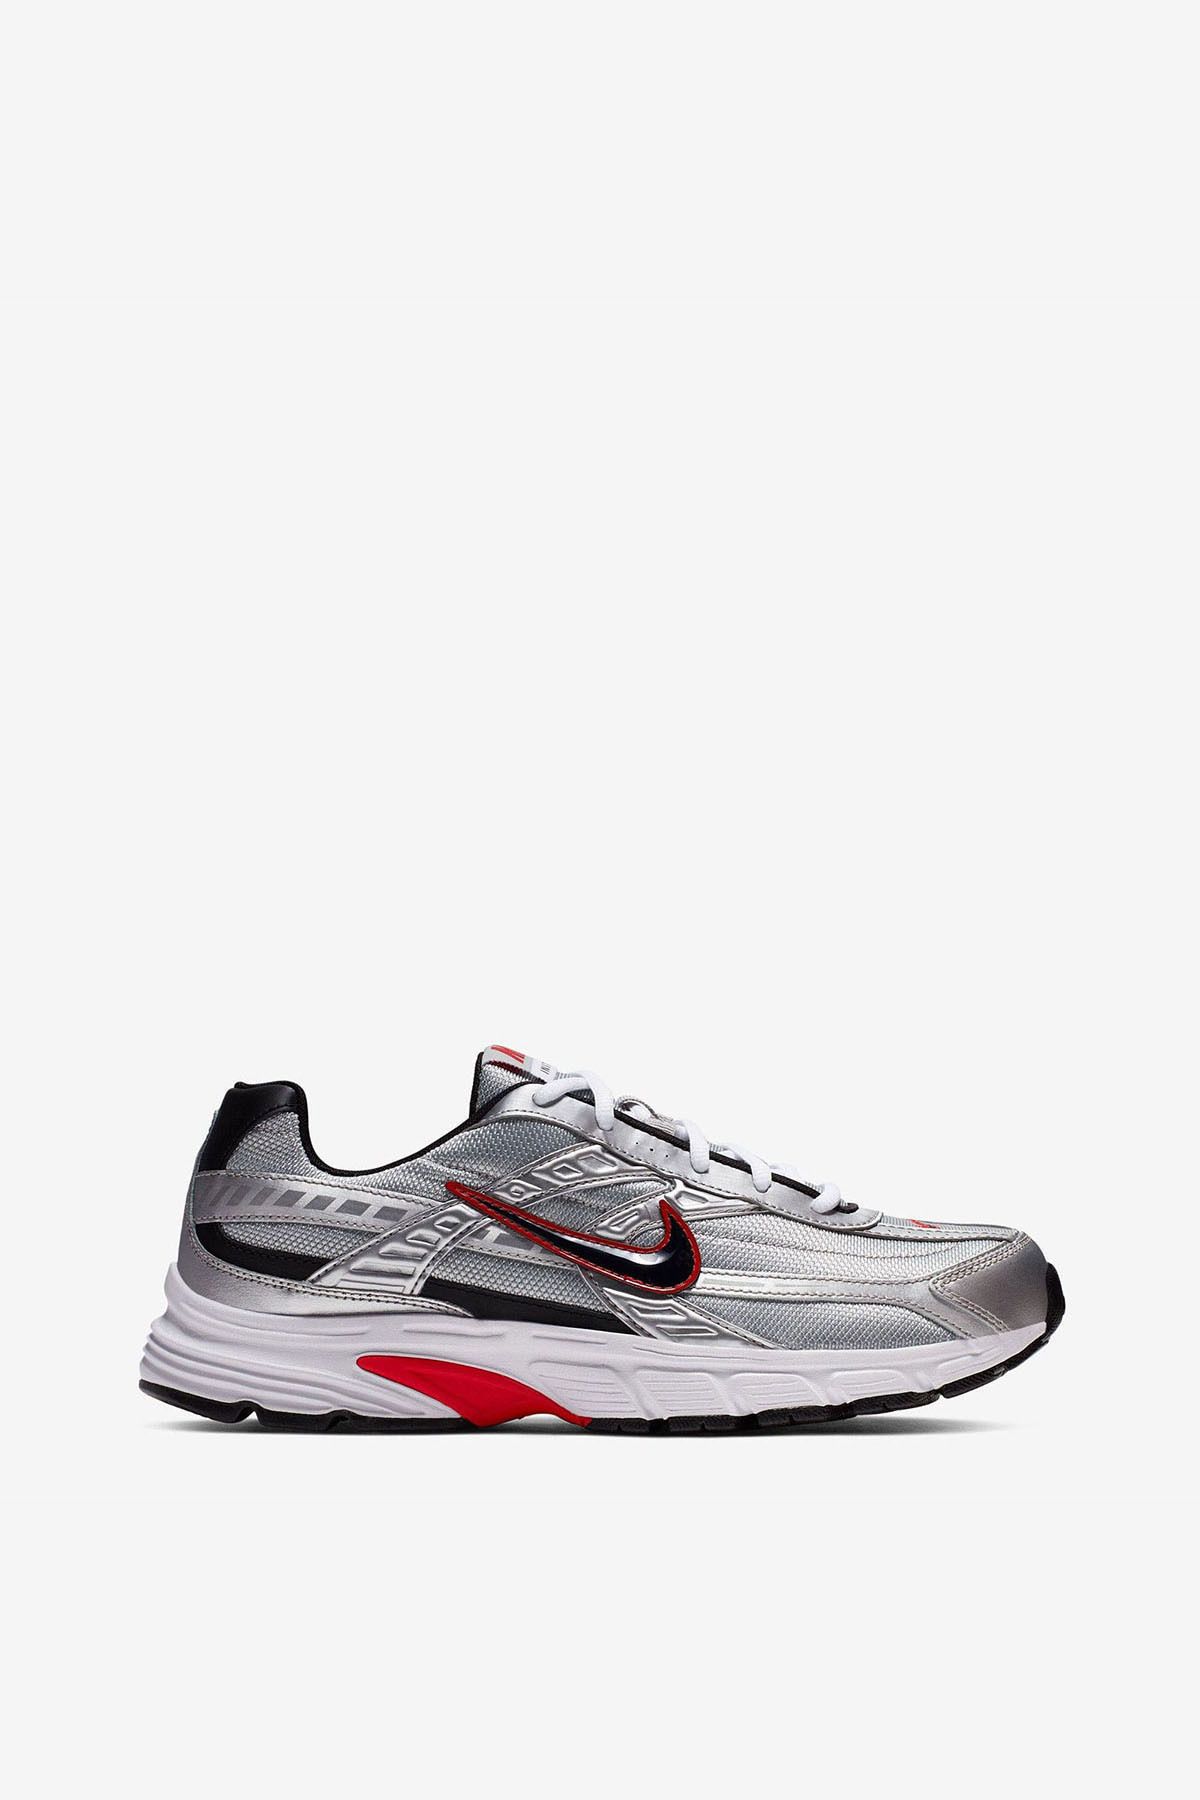 Nike Erkek Koşu - Yürüyüş Ayakkabı initiator 394055-001